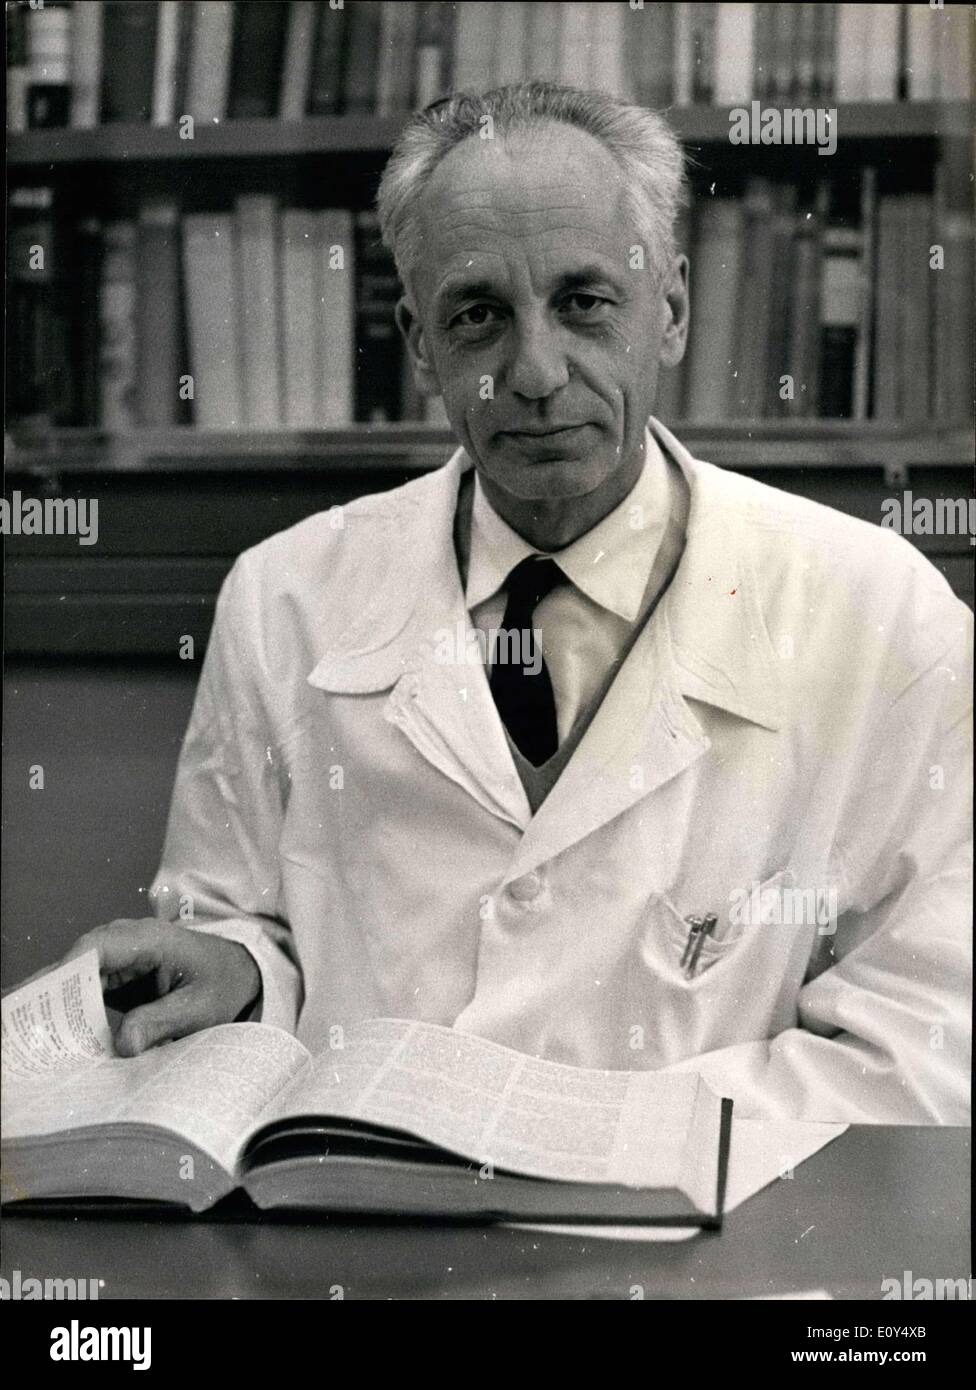 25 ottobre 1968 - Parigi scientifica del Gran Premio è stato dato al Professor Jean Dausset per la sua ricerca su innesti. Egli è di 52 anni e un biologo medico, chi è a capo dell'ematologia e sierologia in Saint-Louis ospedale. Egli è raffigurato sulla sua scrivania. Foto Stock